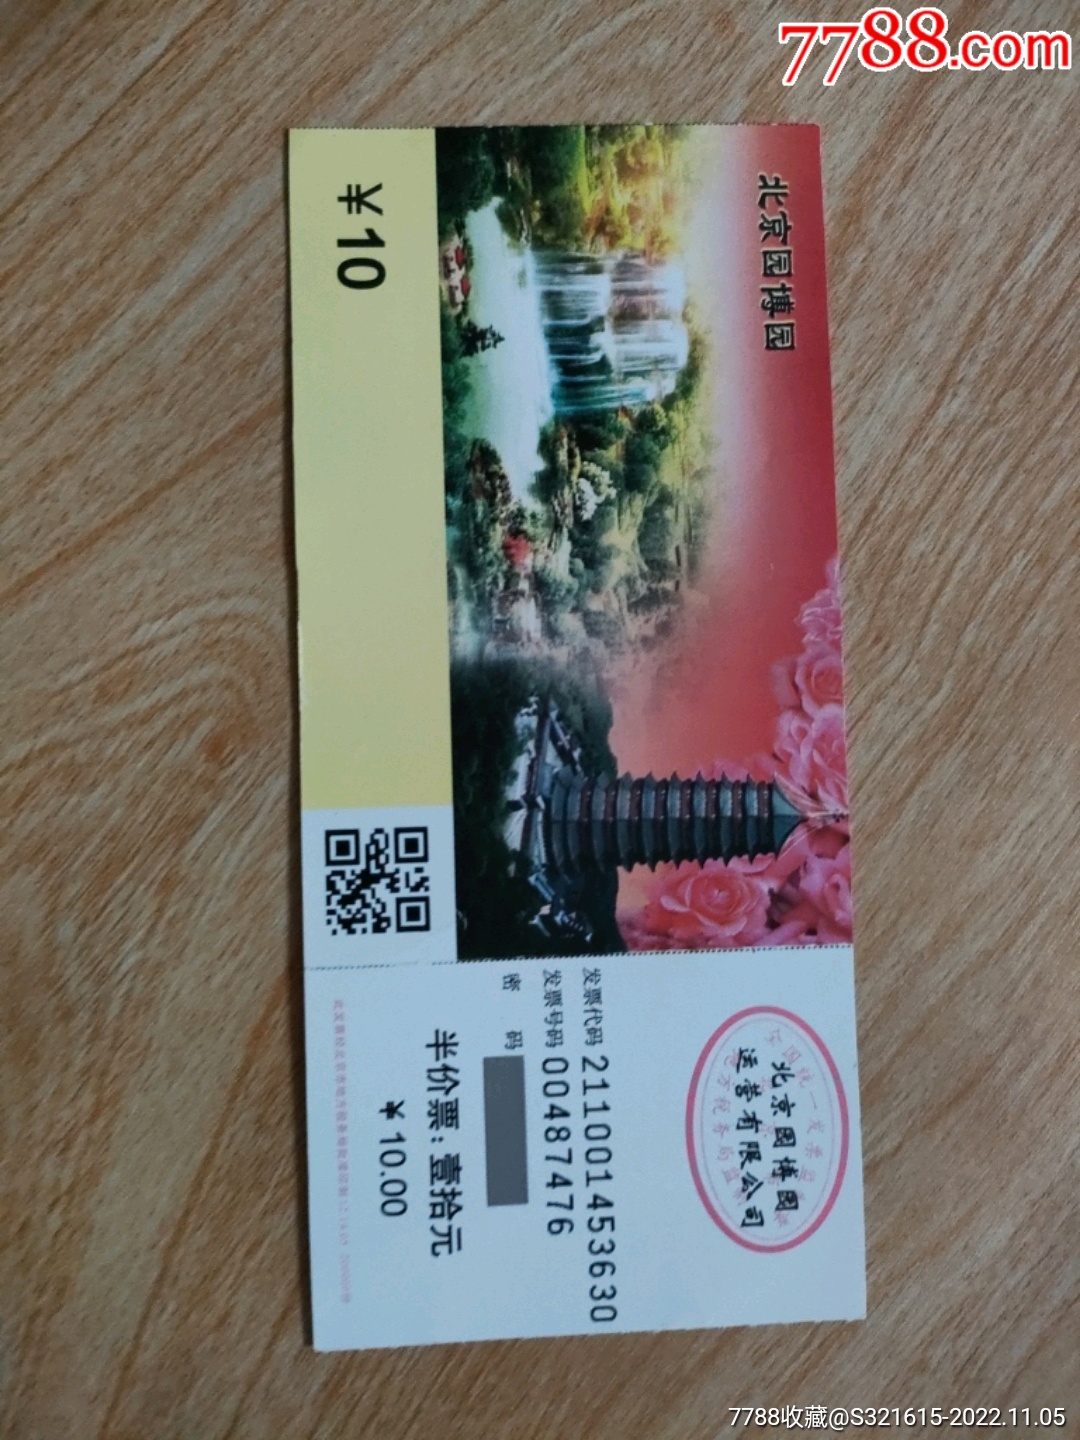 【携程攻略】国家大剧院门票,北京国家大剧院攻略/地址/图片/门票价格